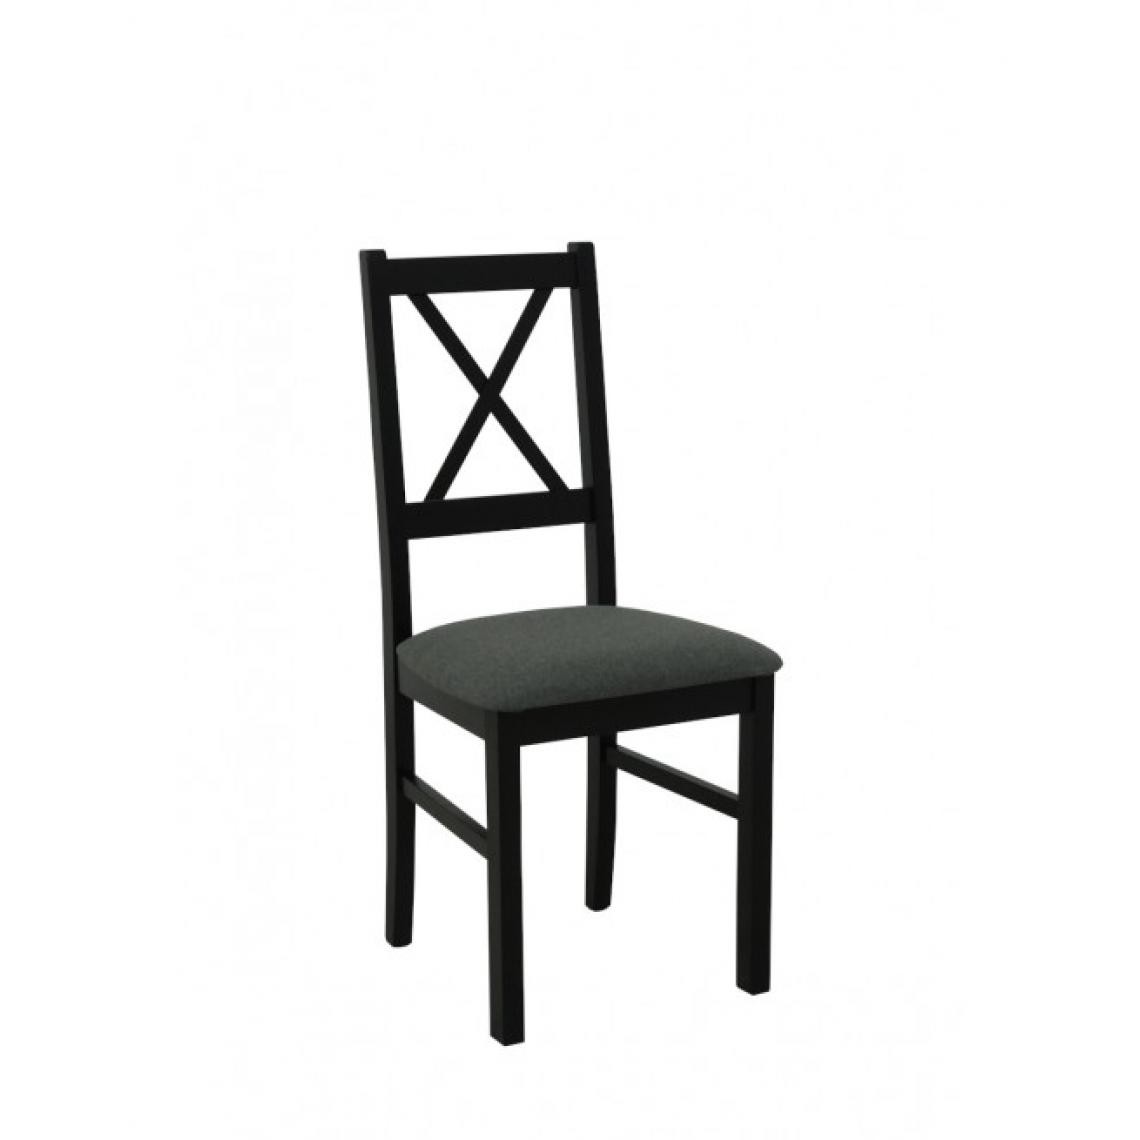 Hucoco - FIORI - Chaise en bois style classique salle à manger - 43x94x40 cm - Assise rembourrée - Noir - Chaises